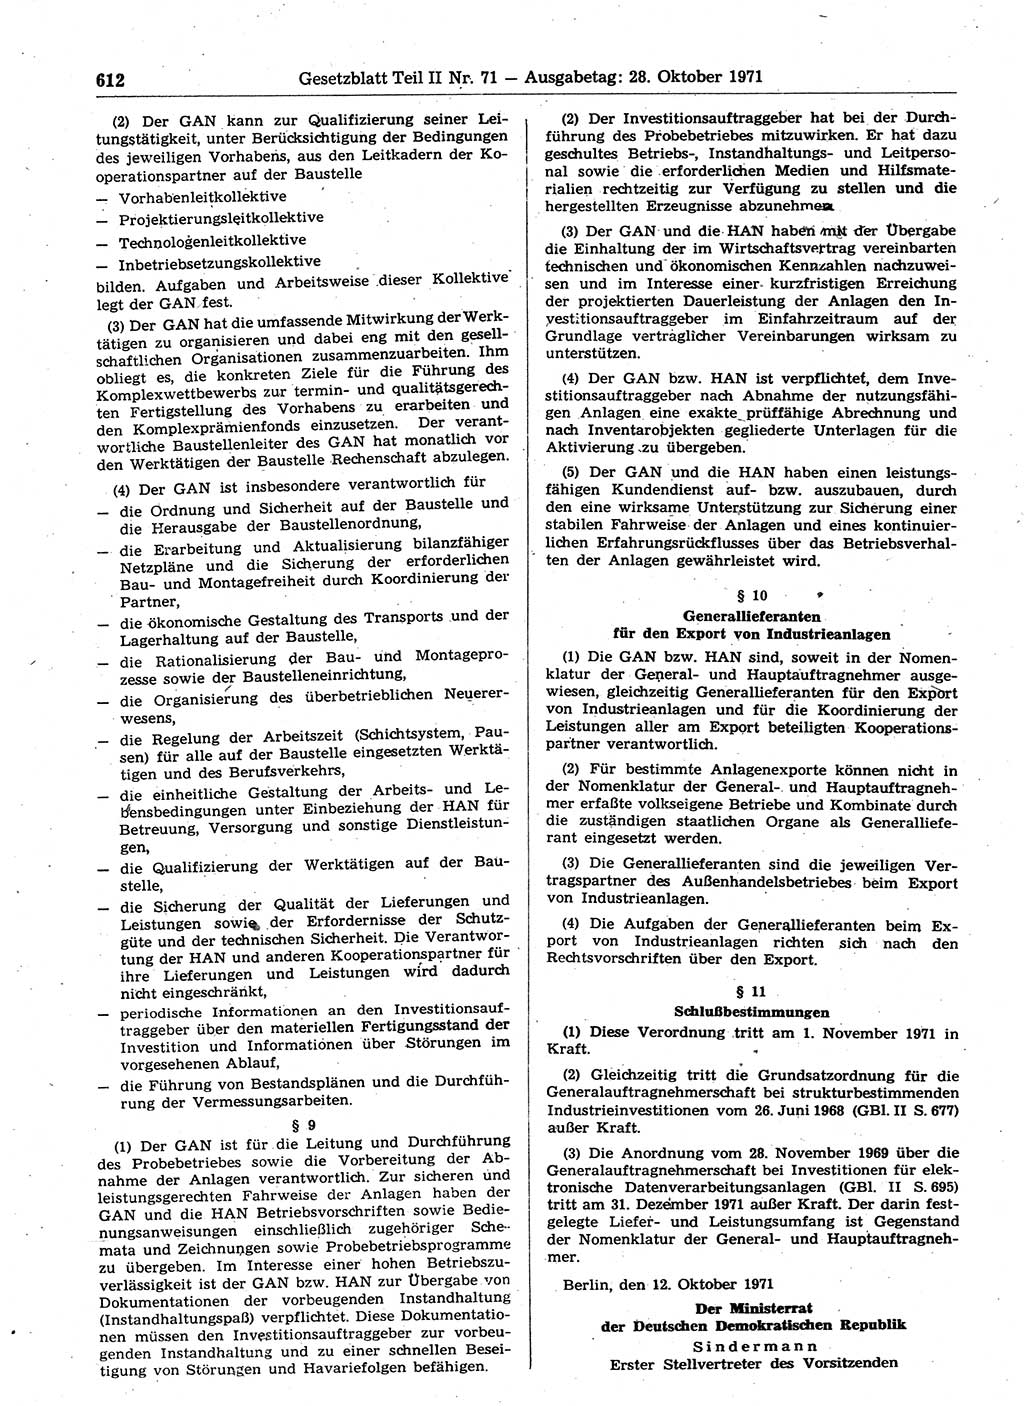 Gesetzblatt (GBl.) der Deutschen Demokratischen Republik (DDR) Teil ⅠⅠ 1971, Seite 612 (GBl. DDR ⅠⅠ 1971, S. 612)